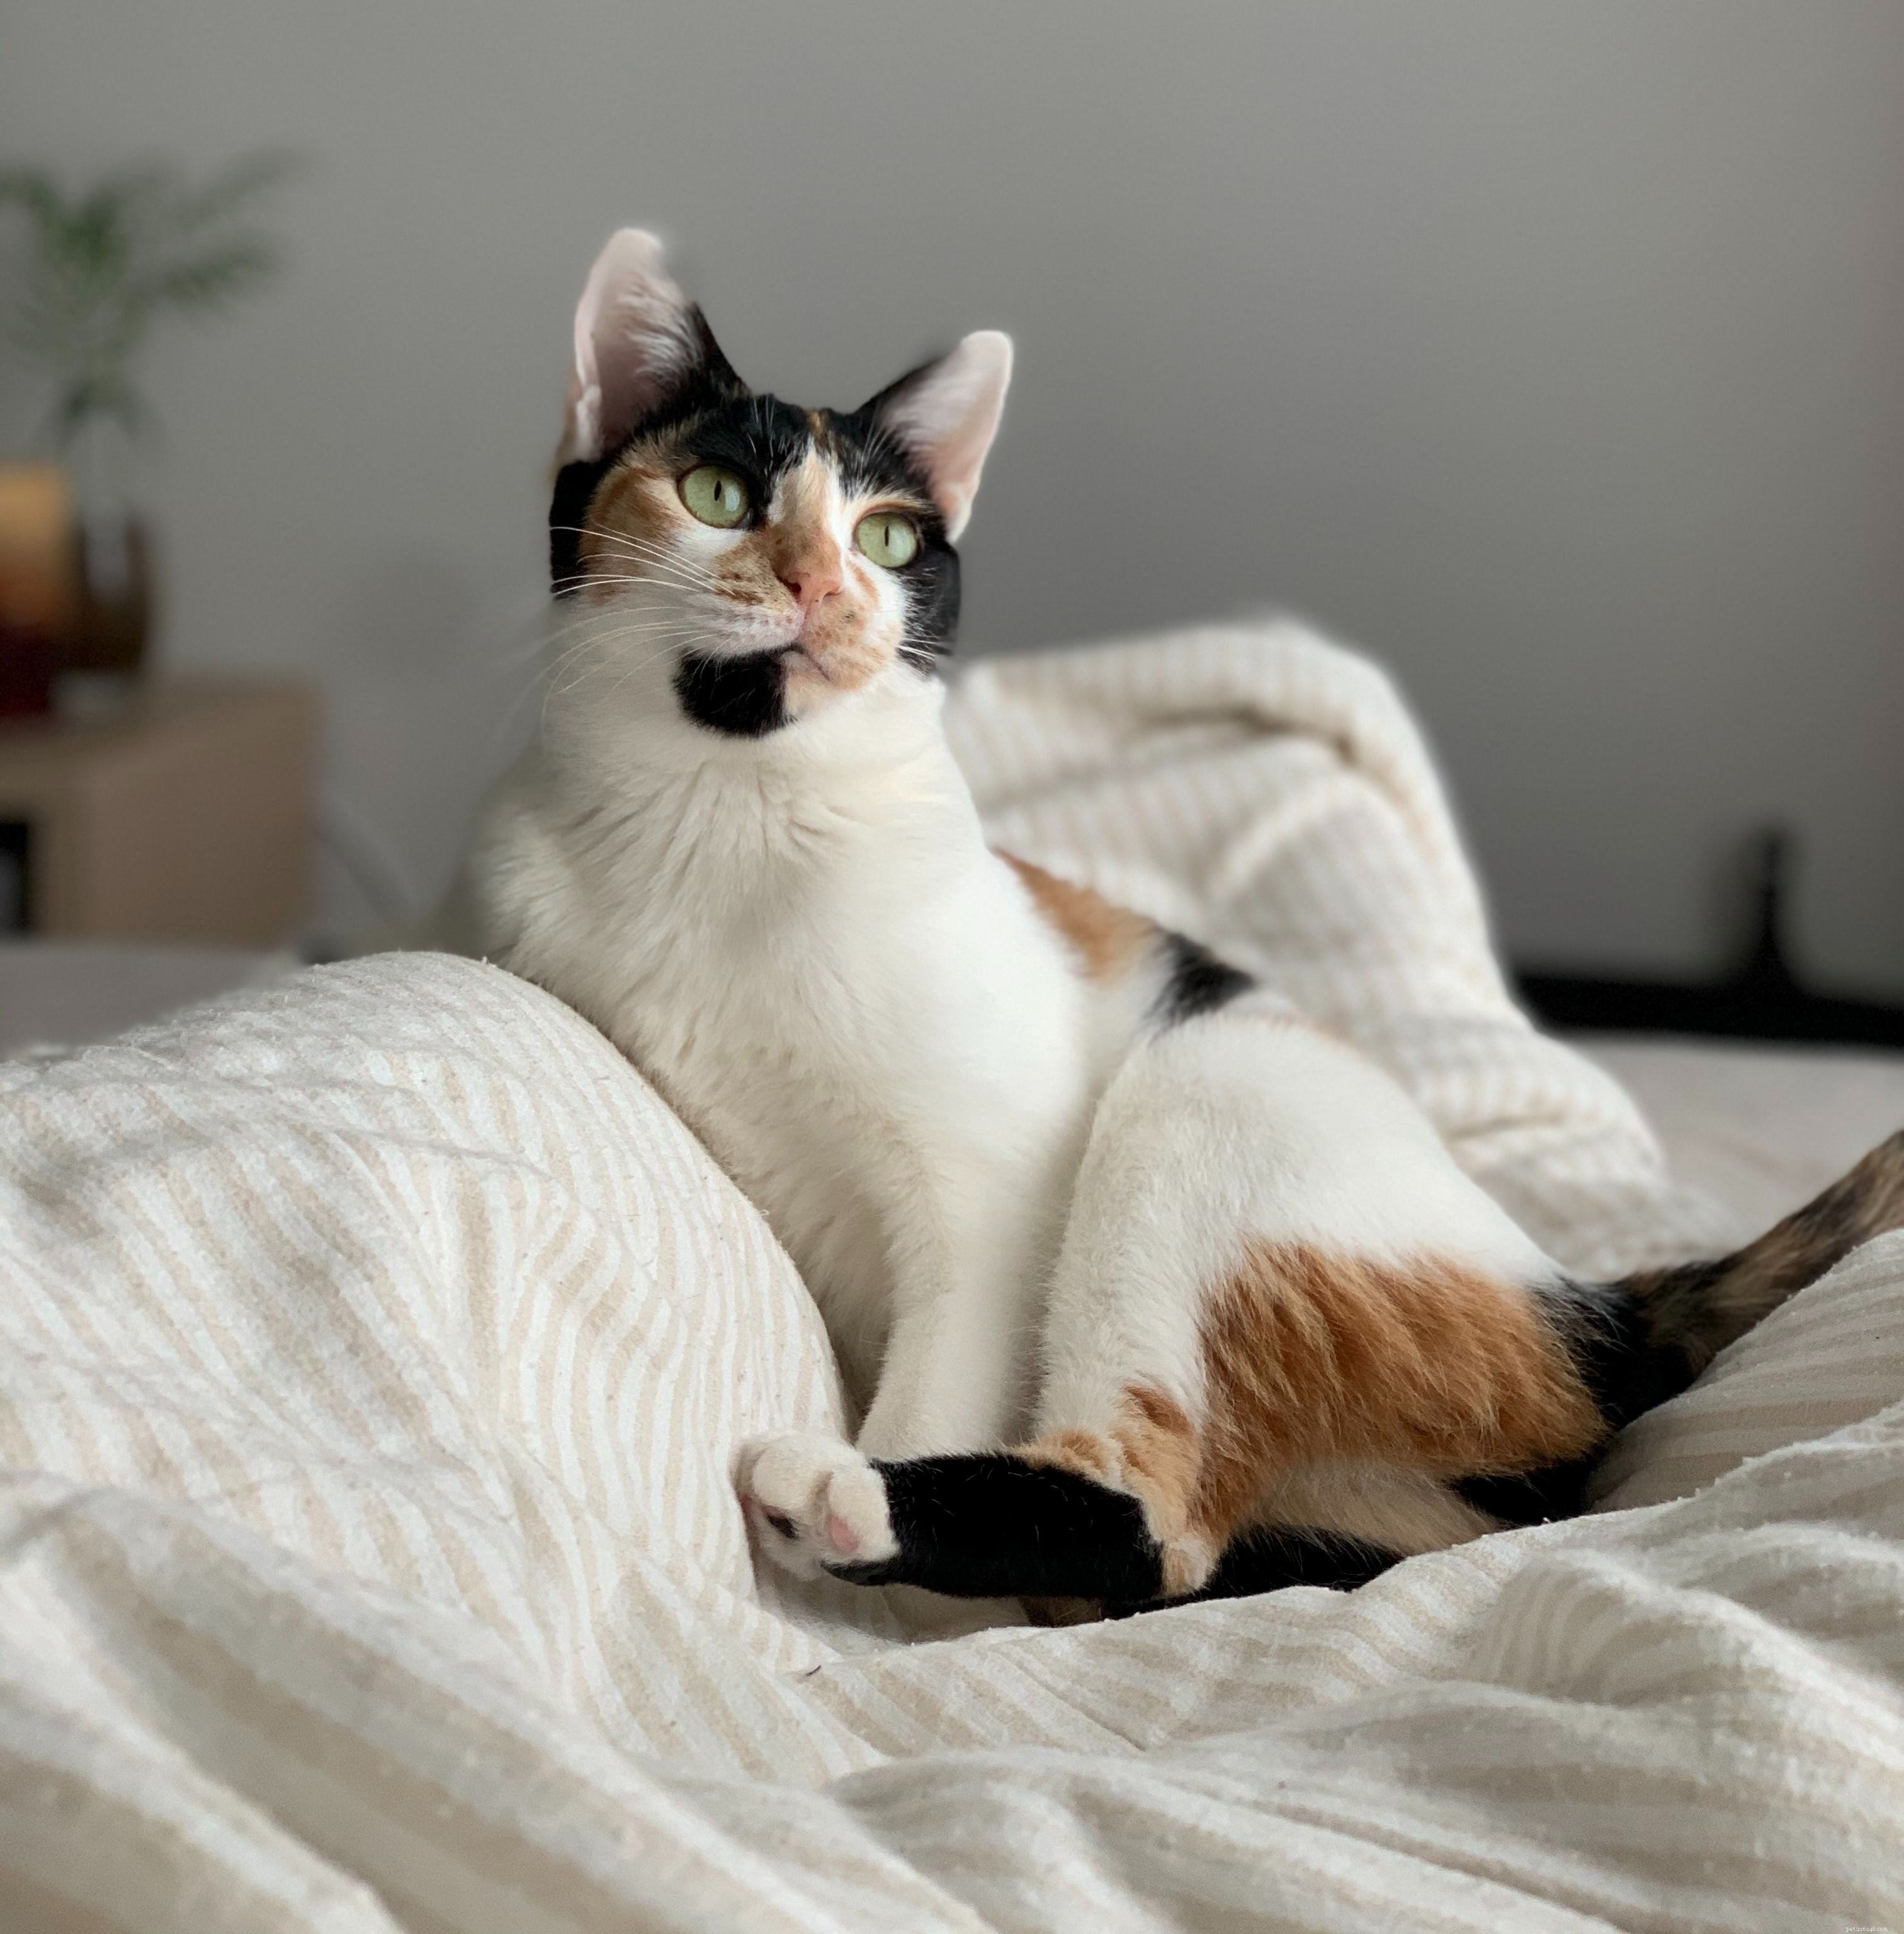 Gli oli essenziali hanno una vasta gamma di usi, dall aromaterapia calmante all odore gradevole delle nostre case e dei prodotti di bellezza, ma possono anche causare danni ai gatti .